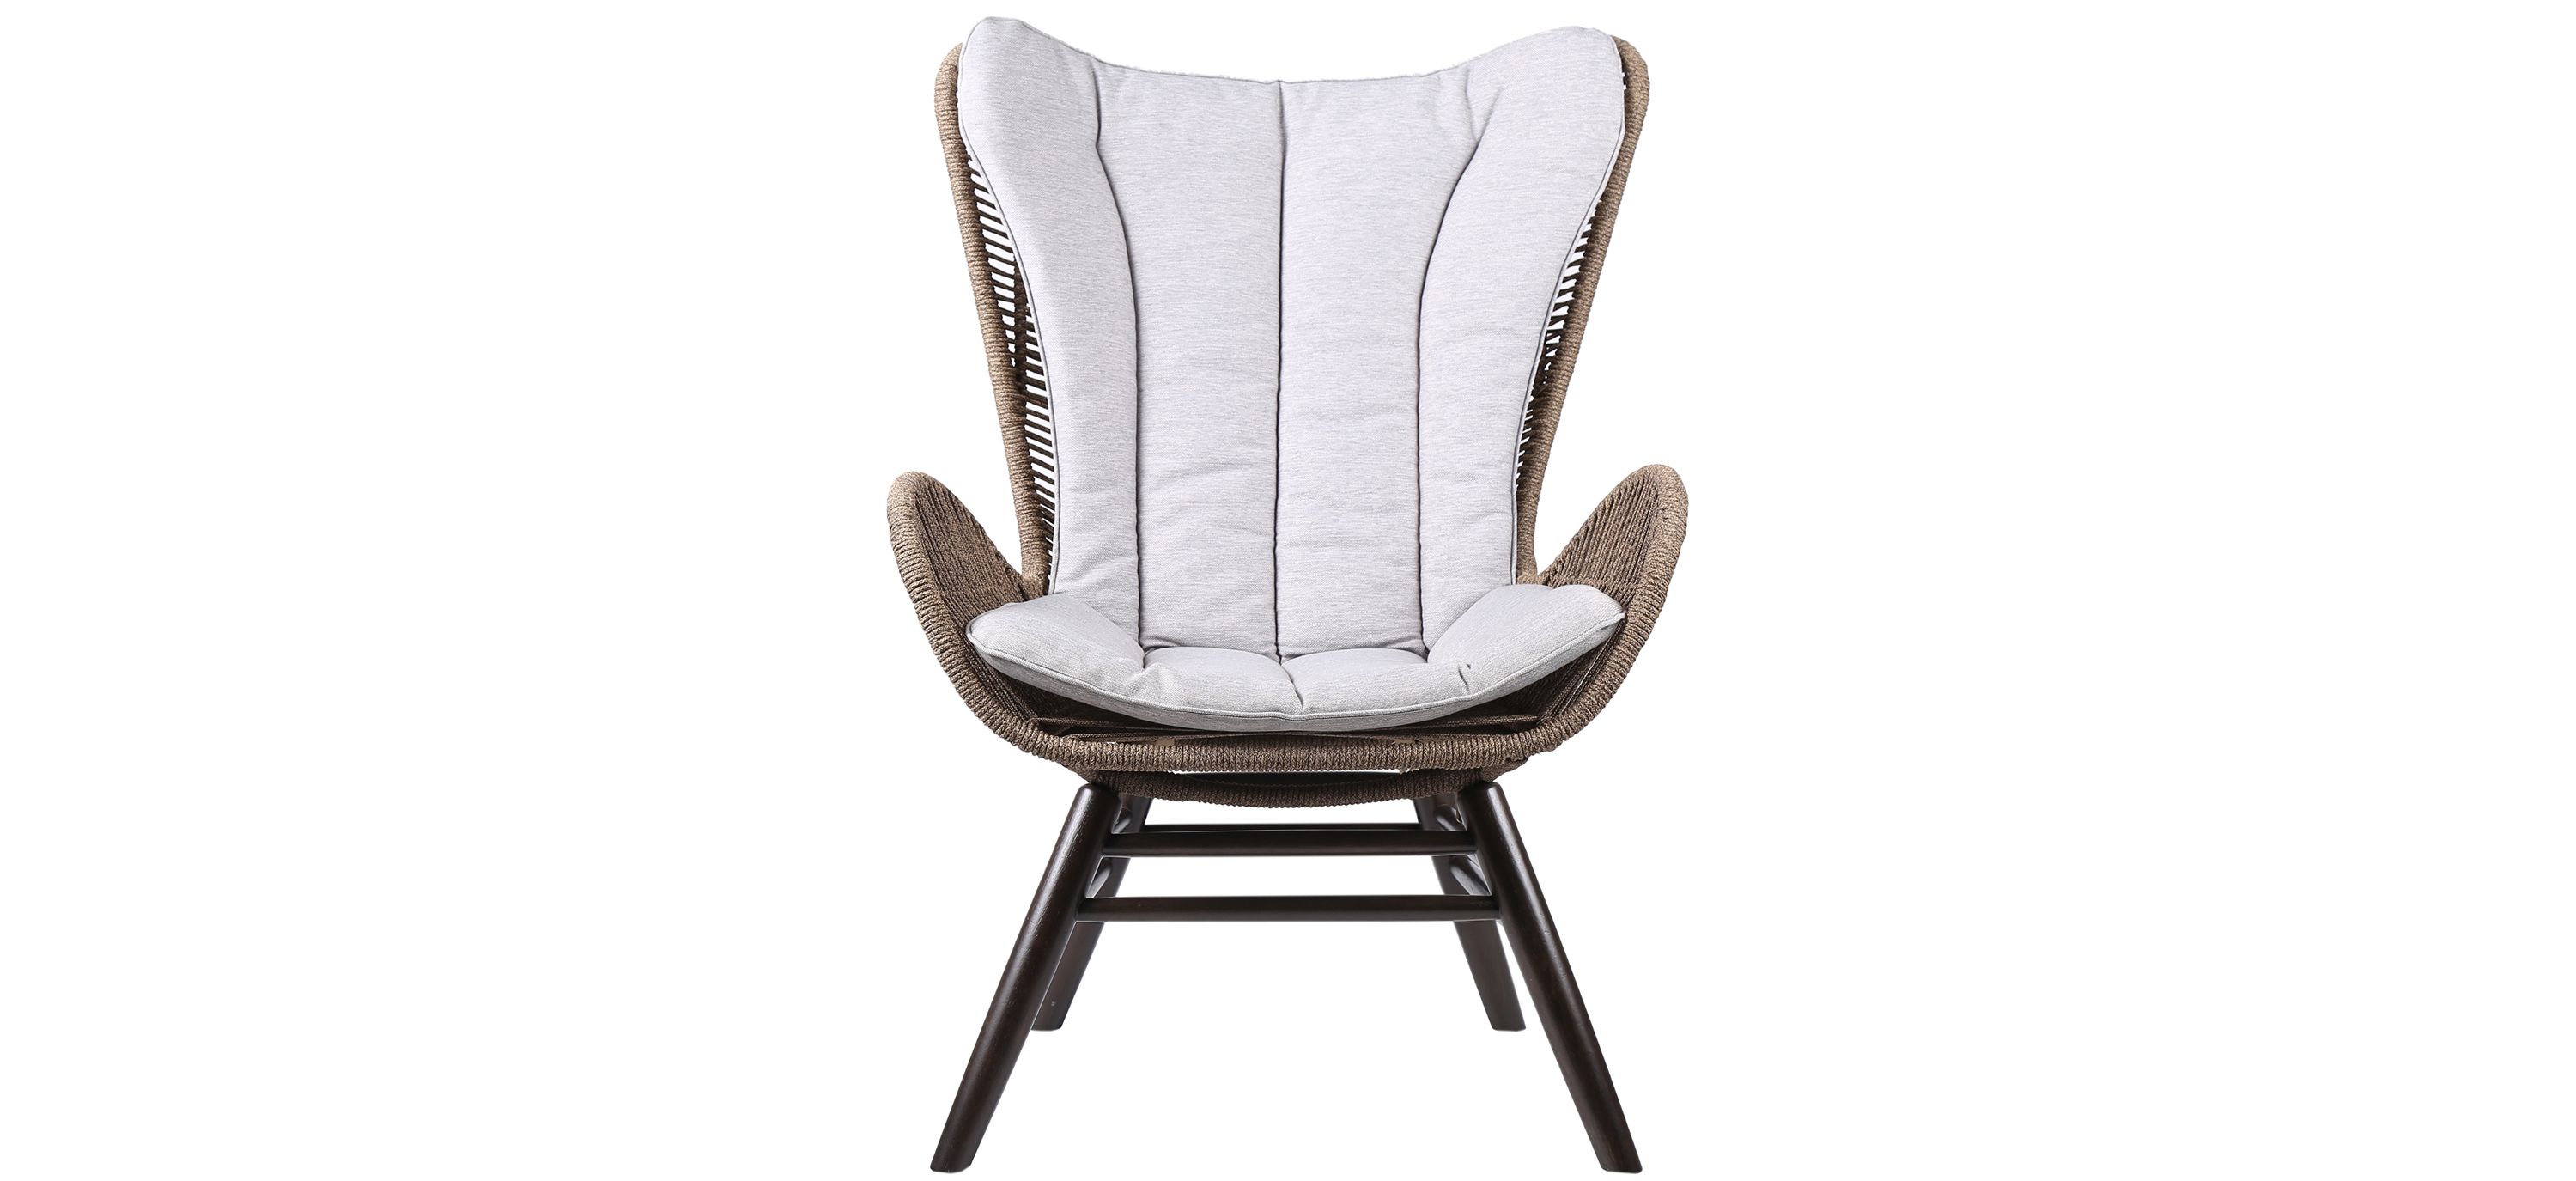 King Indoor Outdoor Lounge Chair